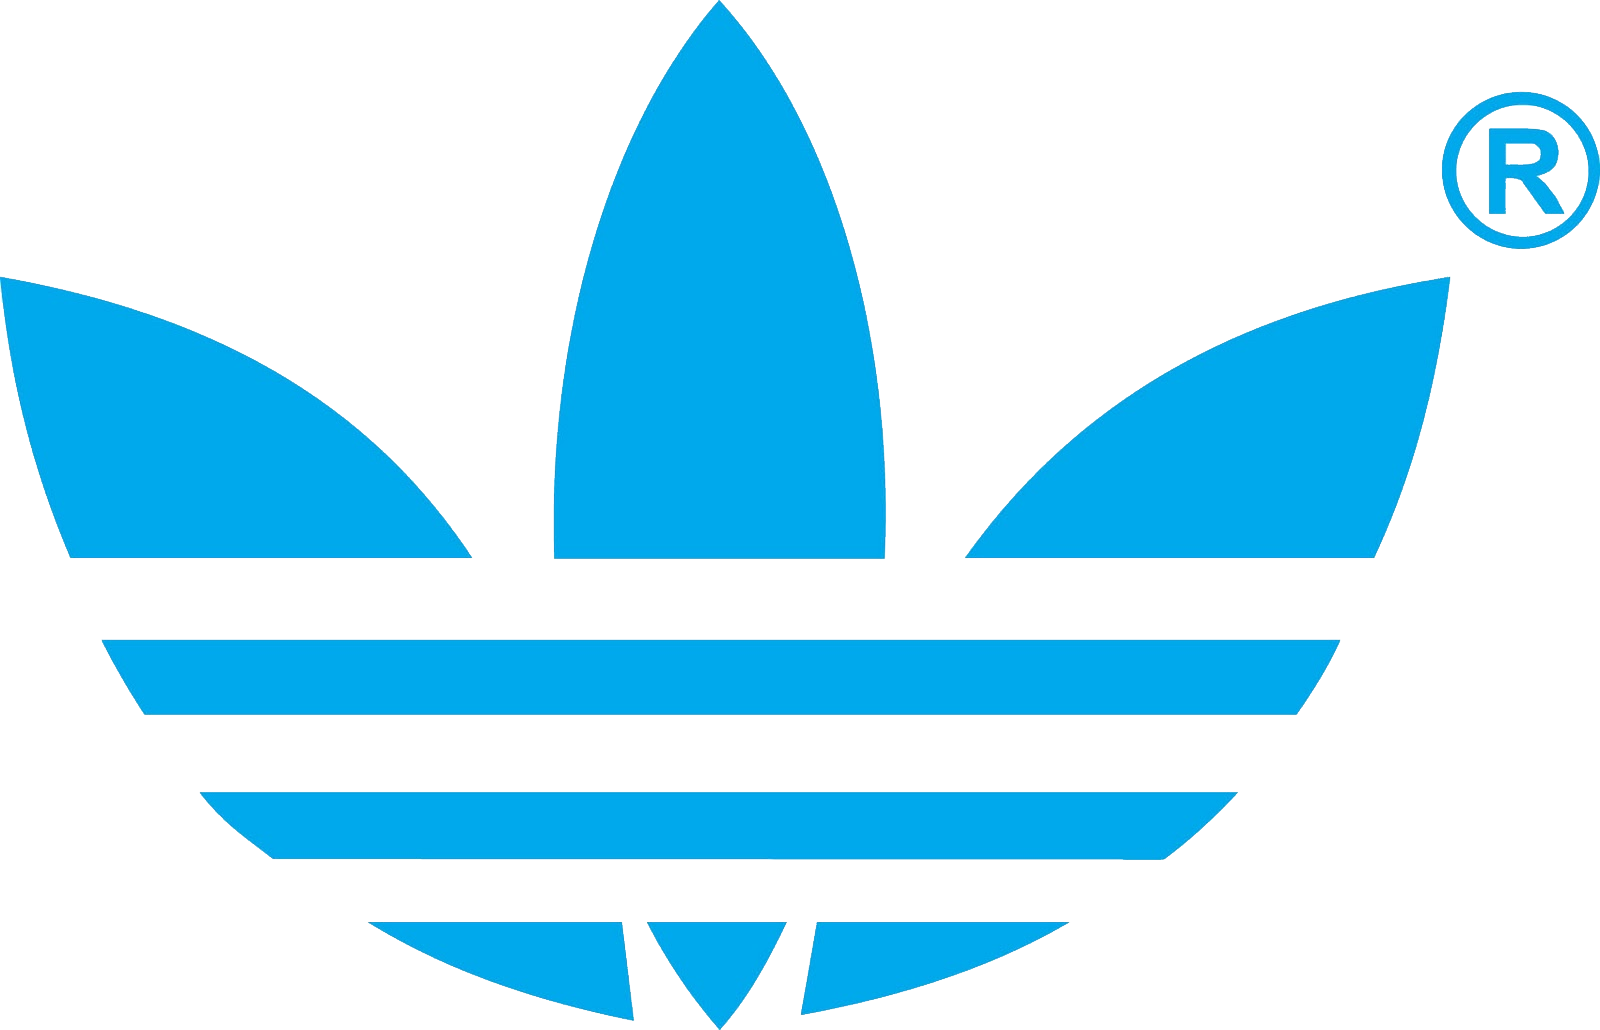 Logotipo da Adidas